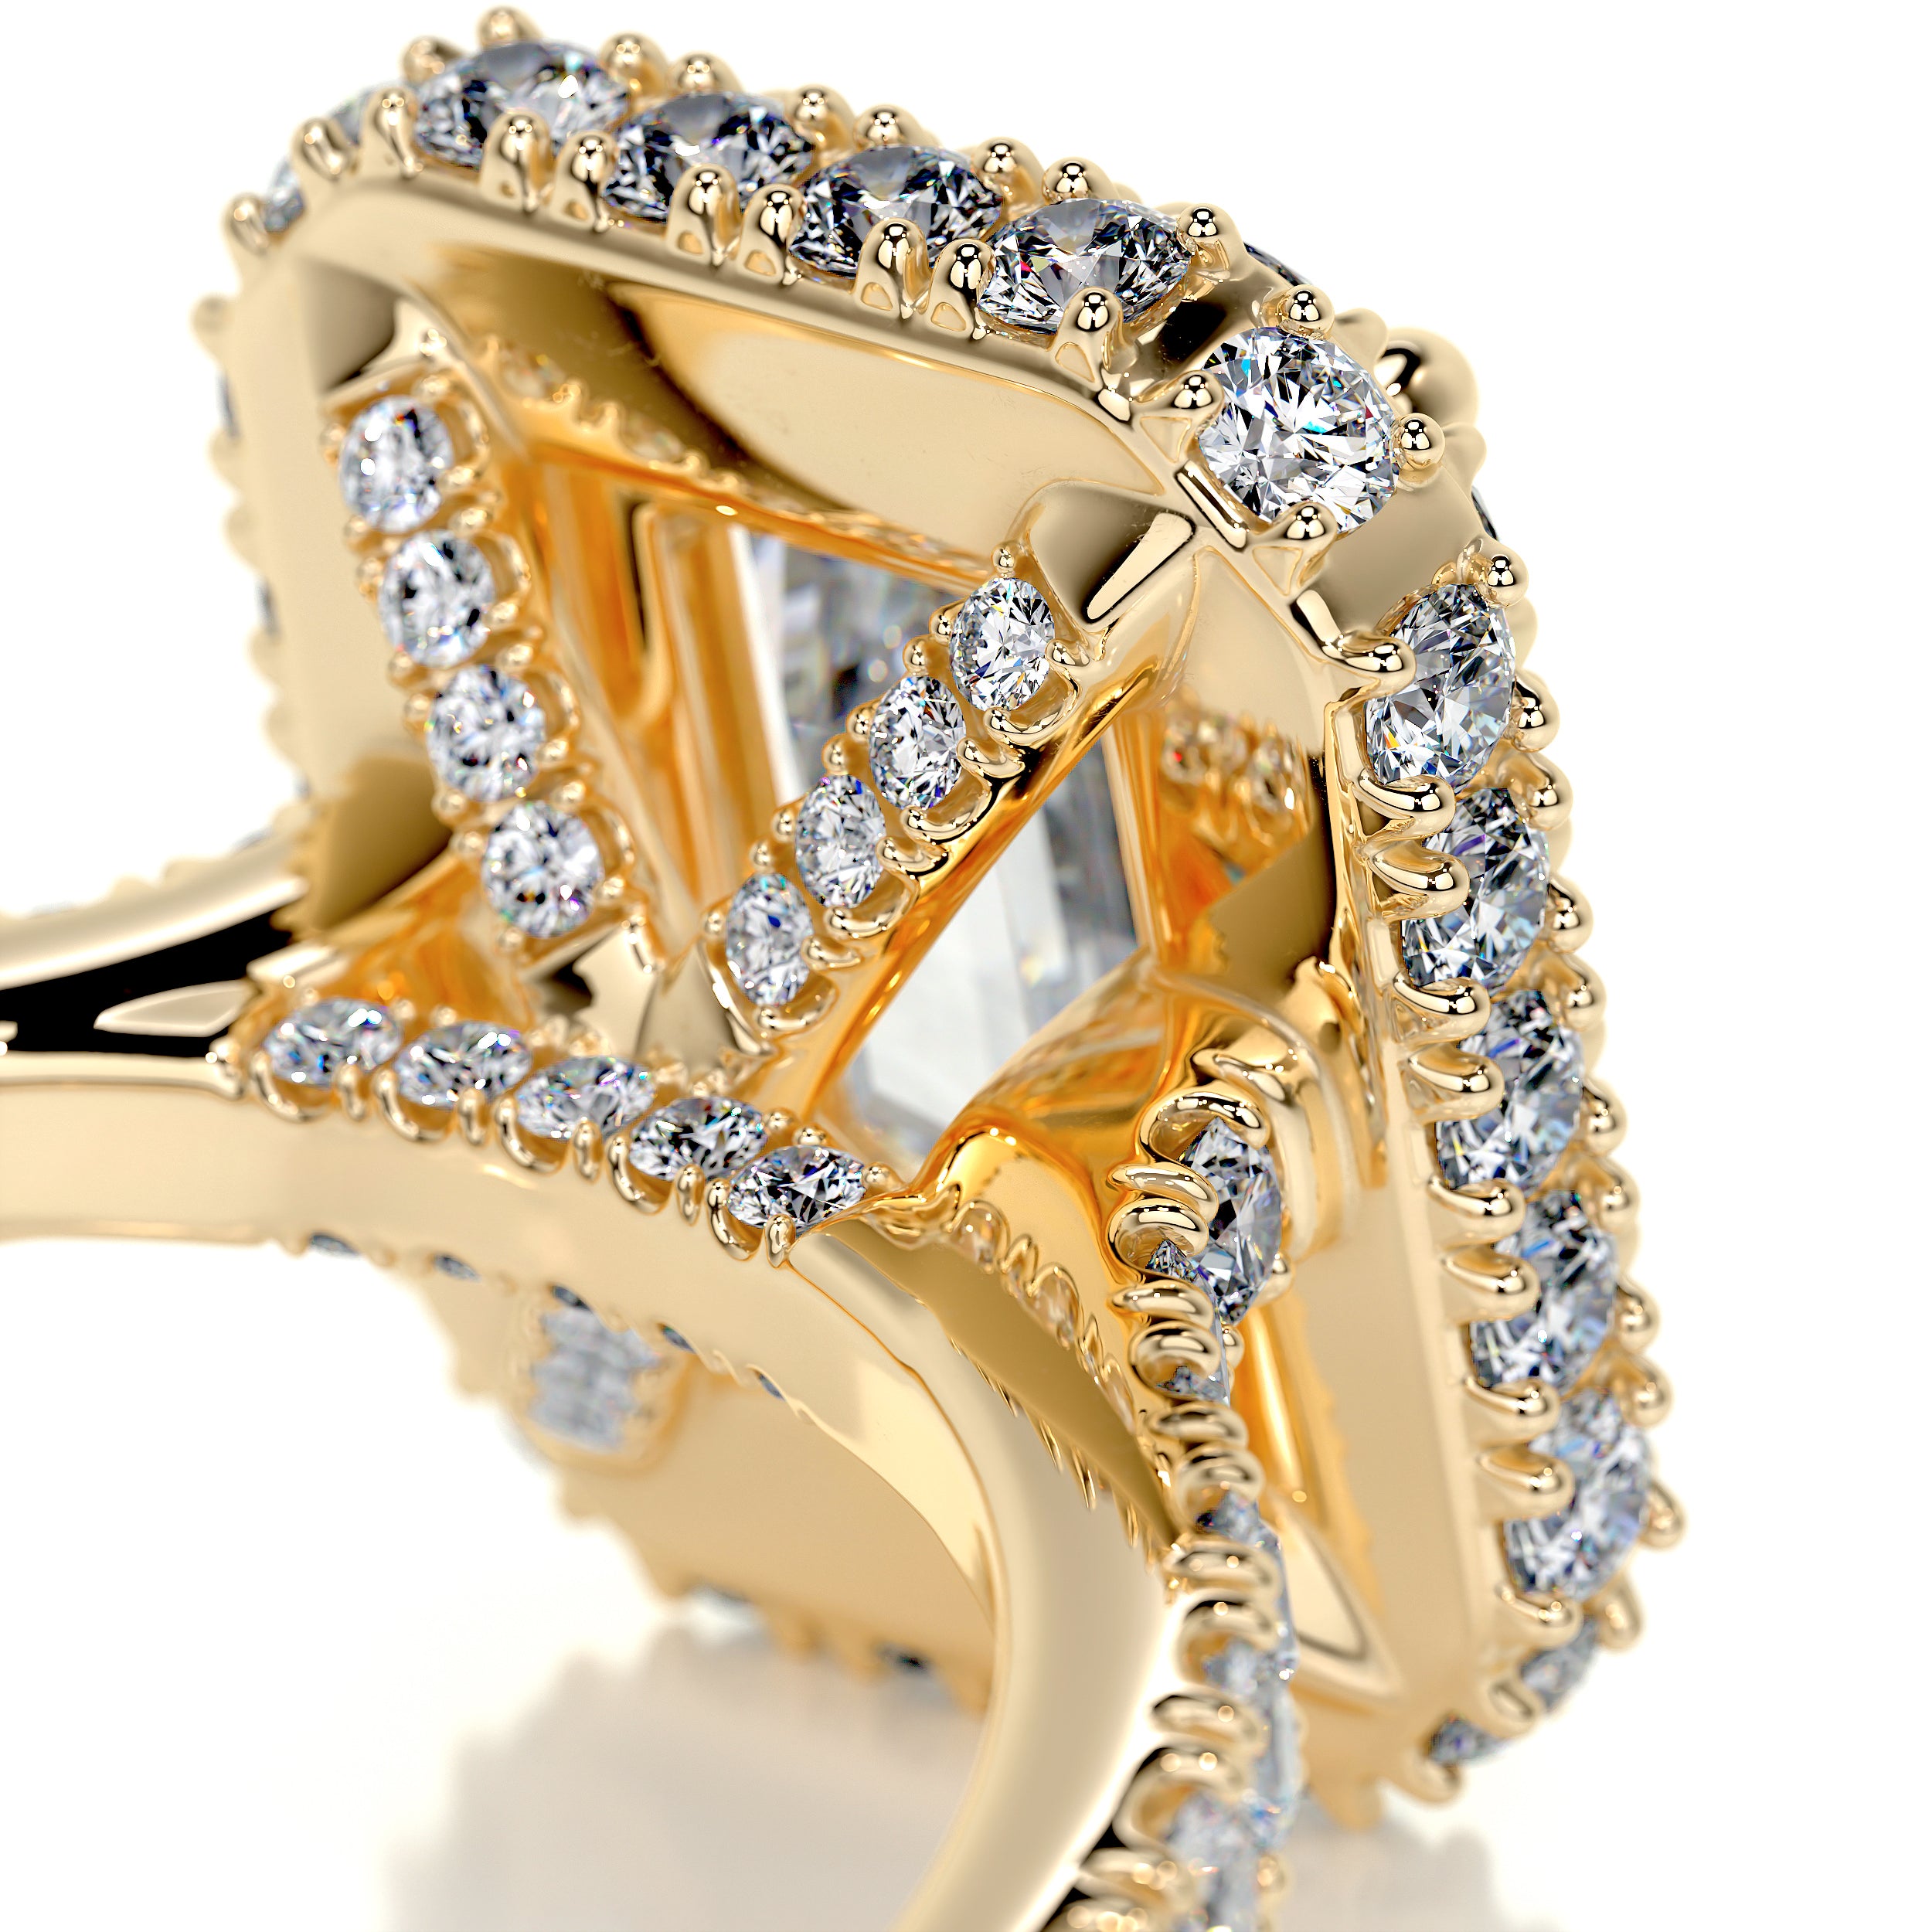 Lana Moissanite & Diamonds Ring -18K Yellow Gold